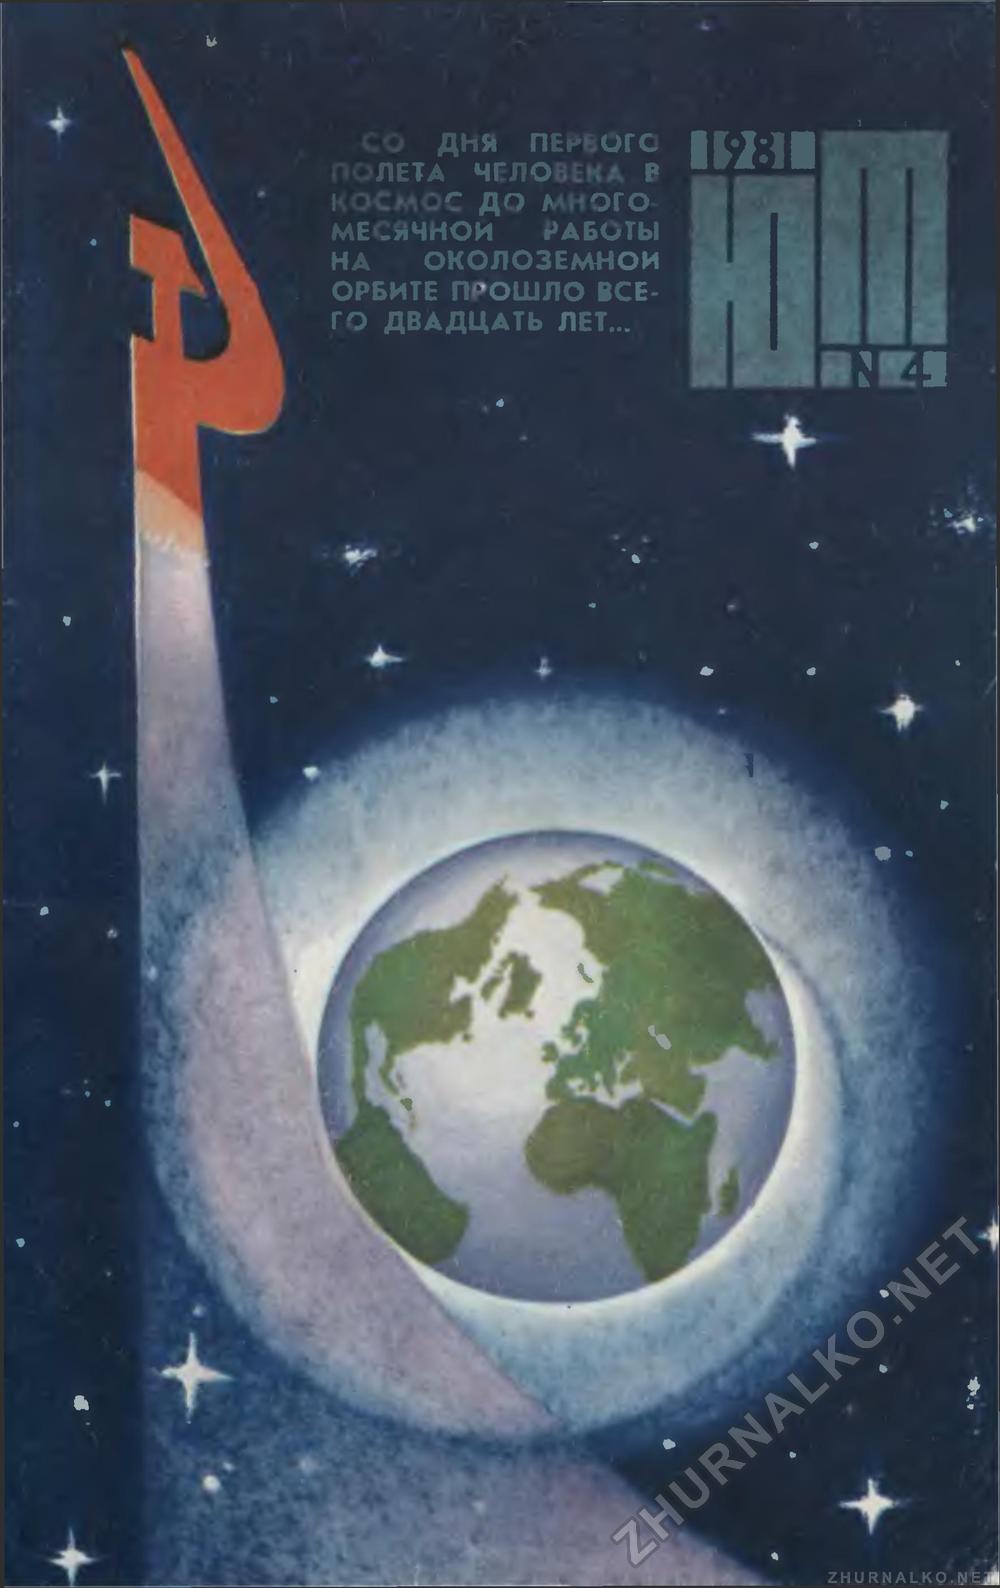   1981-04,  1